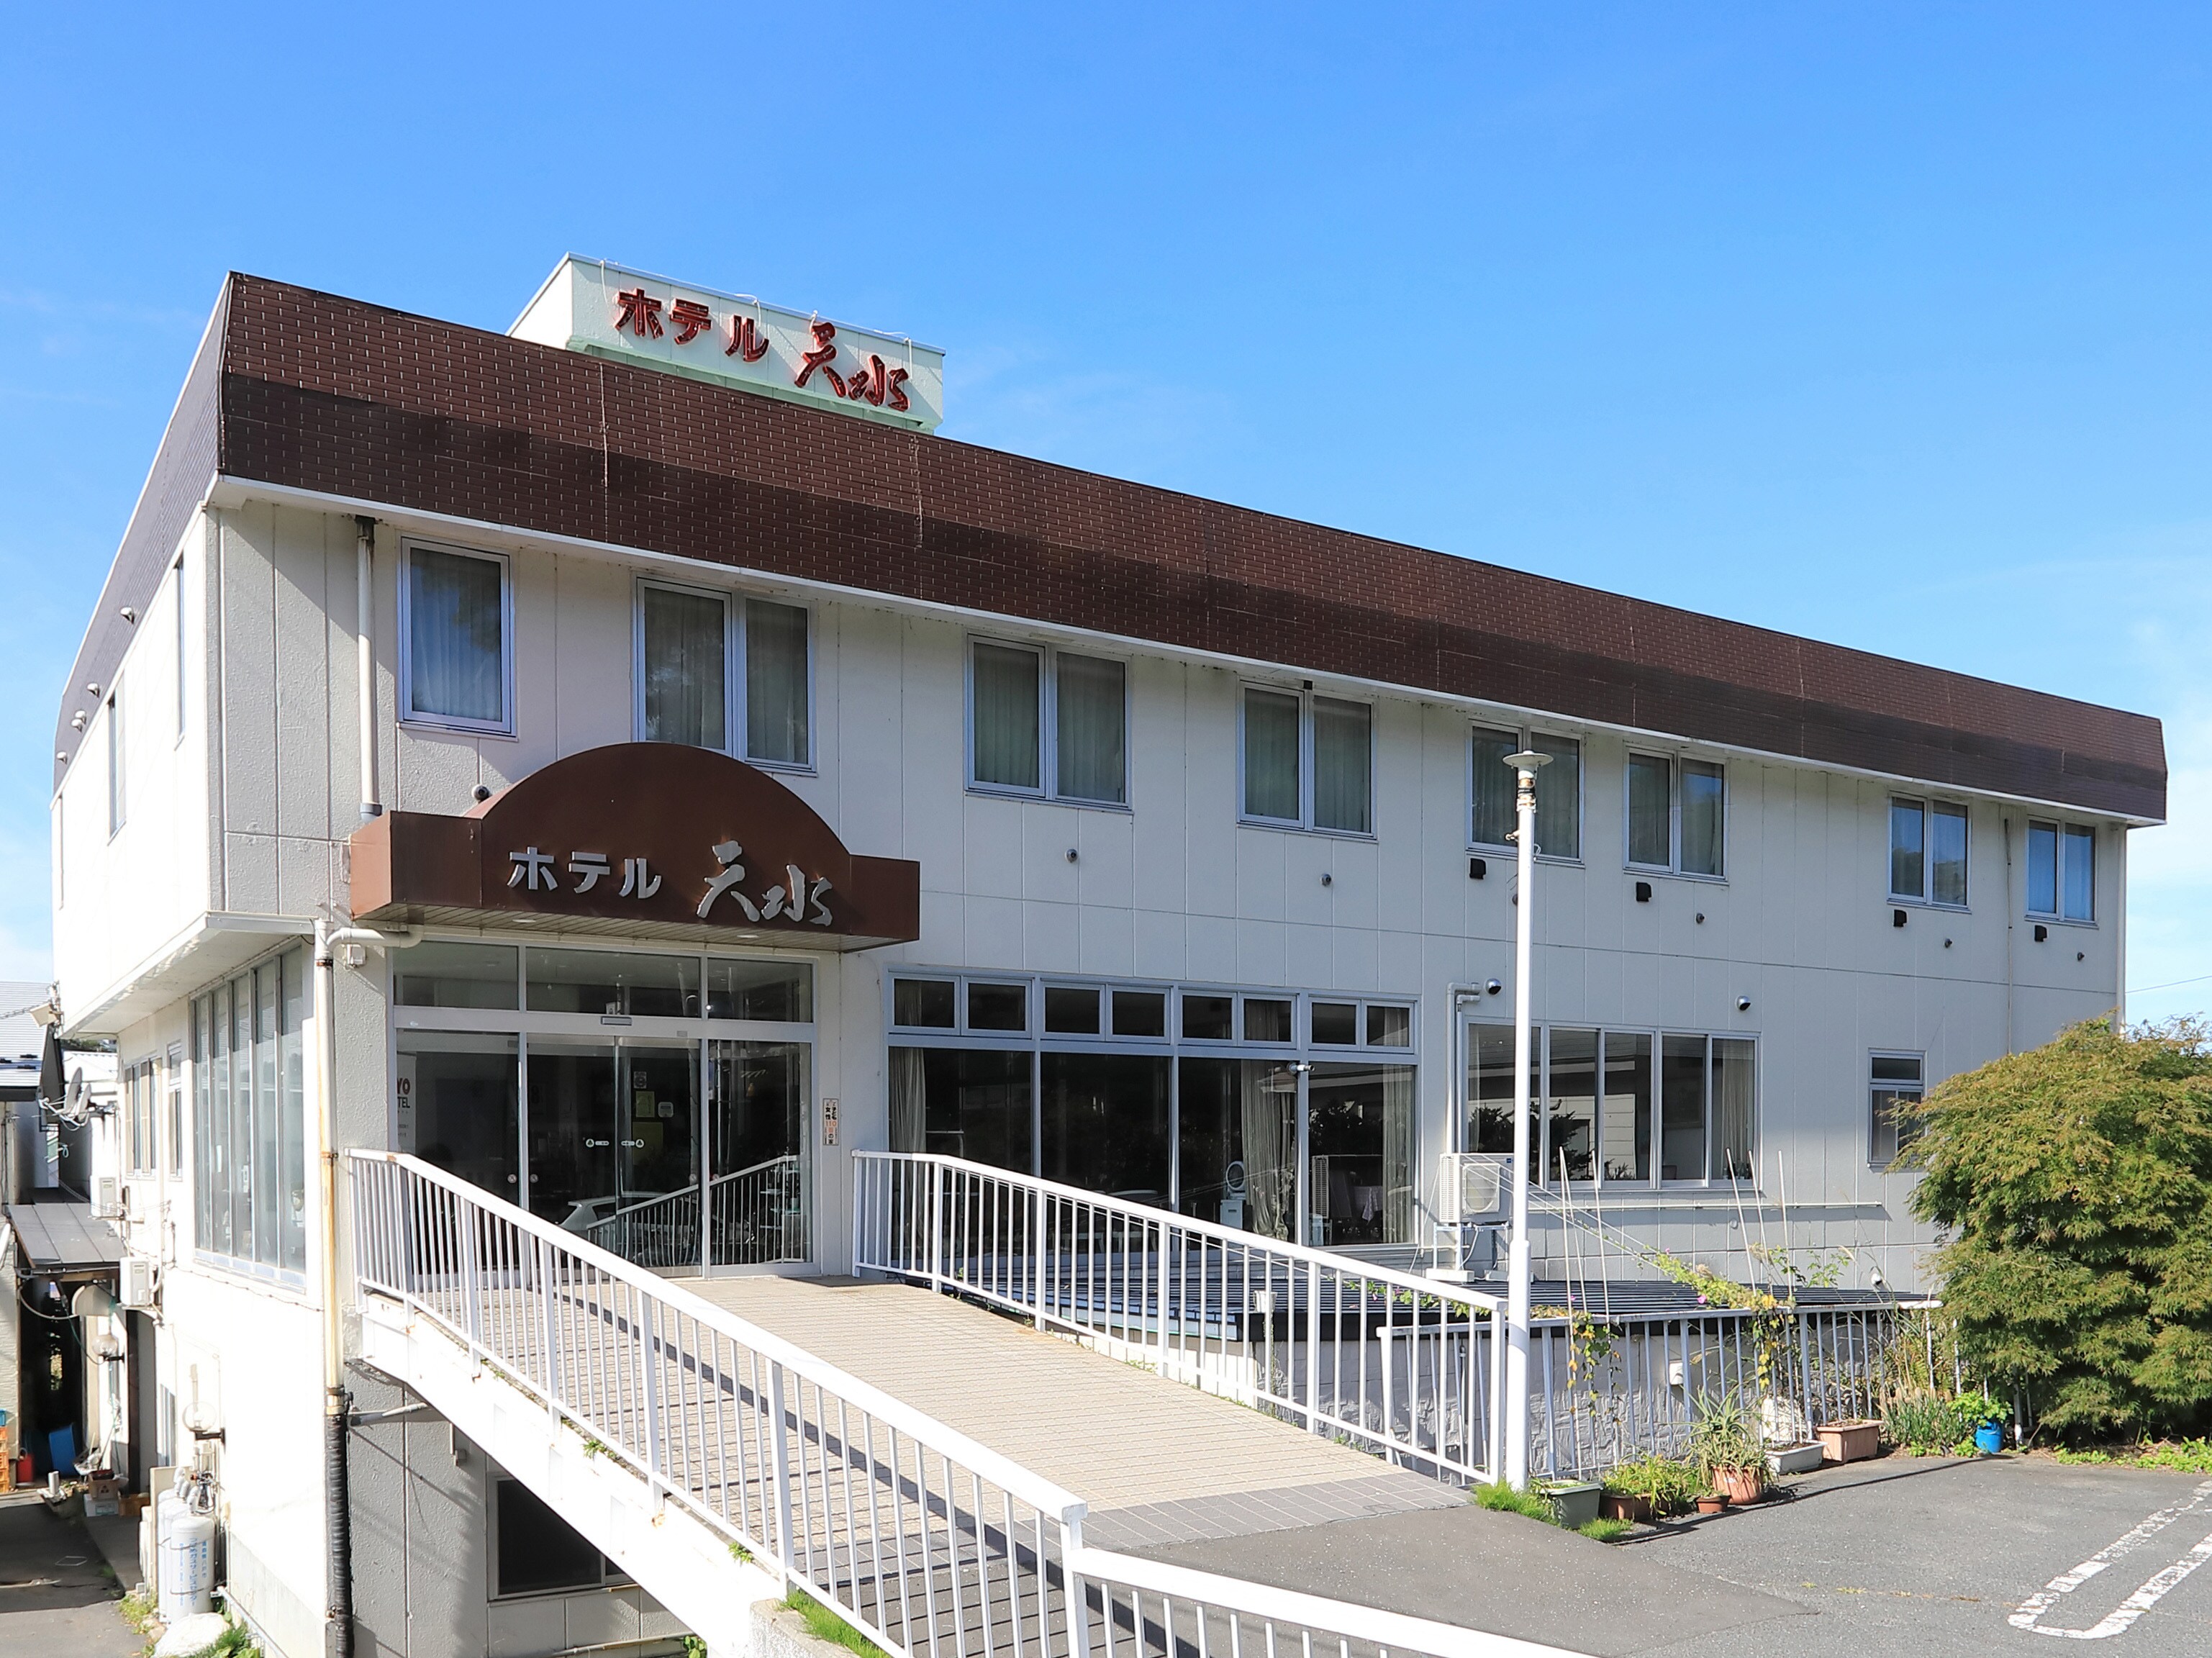 外觀 * 酒店距離三澤站有 1 分鐘步行路程。請作為商務和觀光的據點使用。